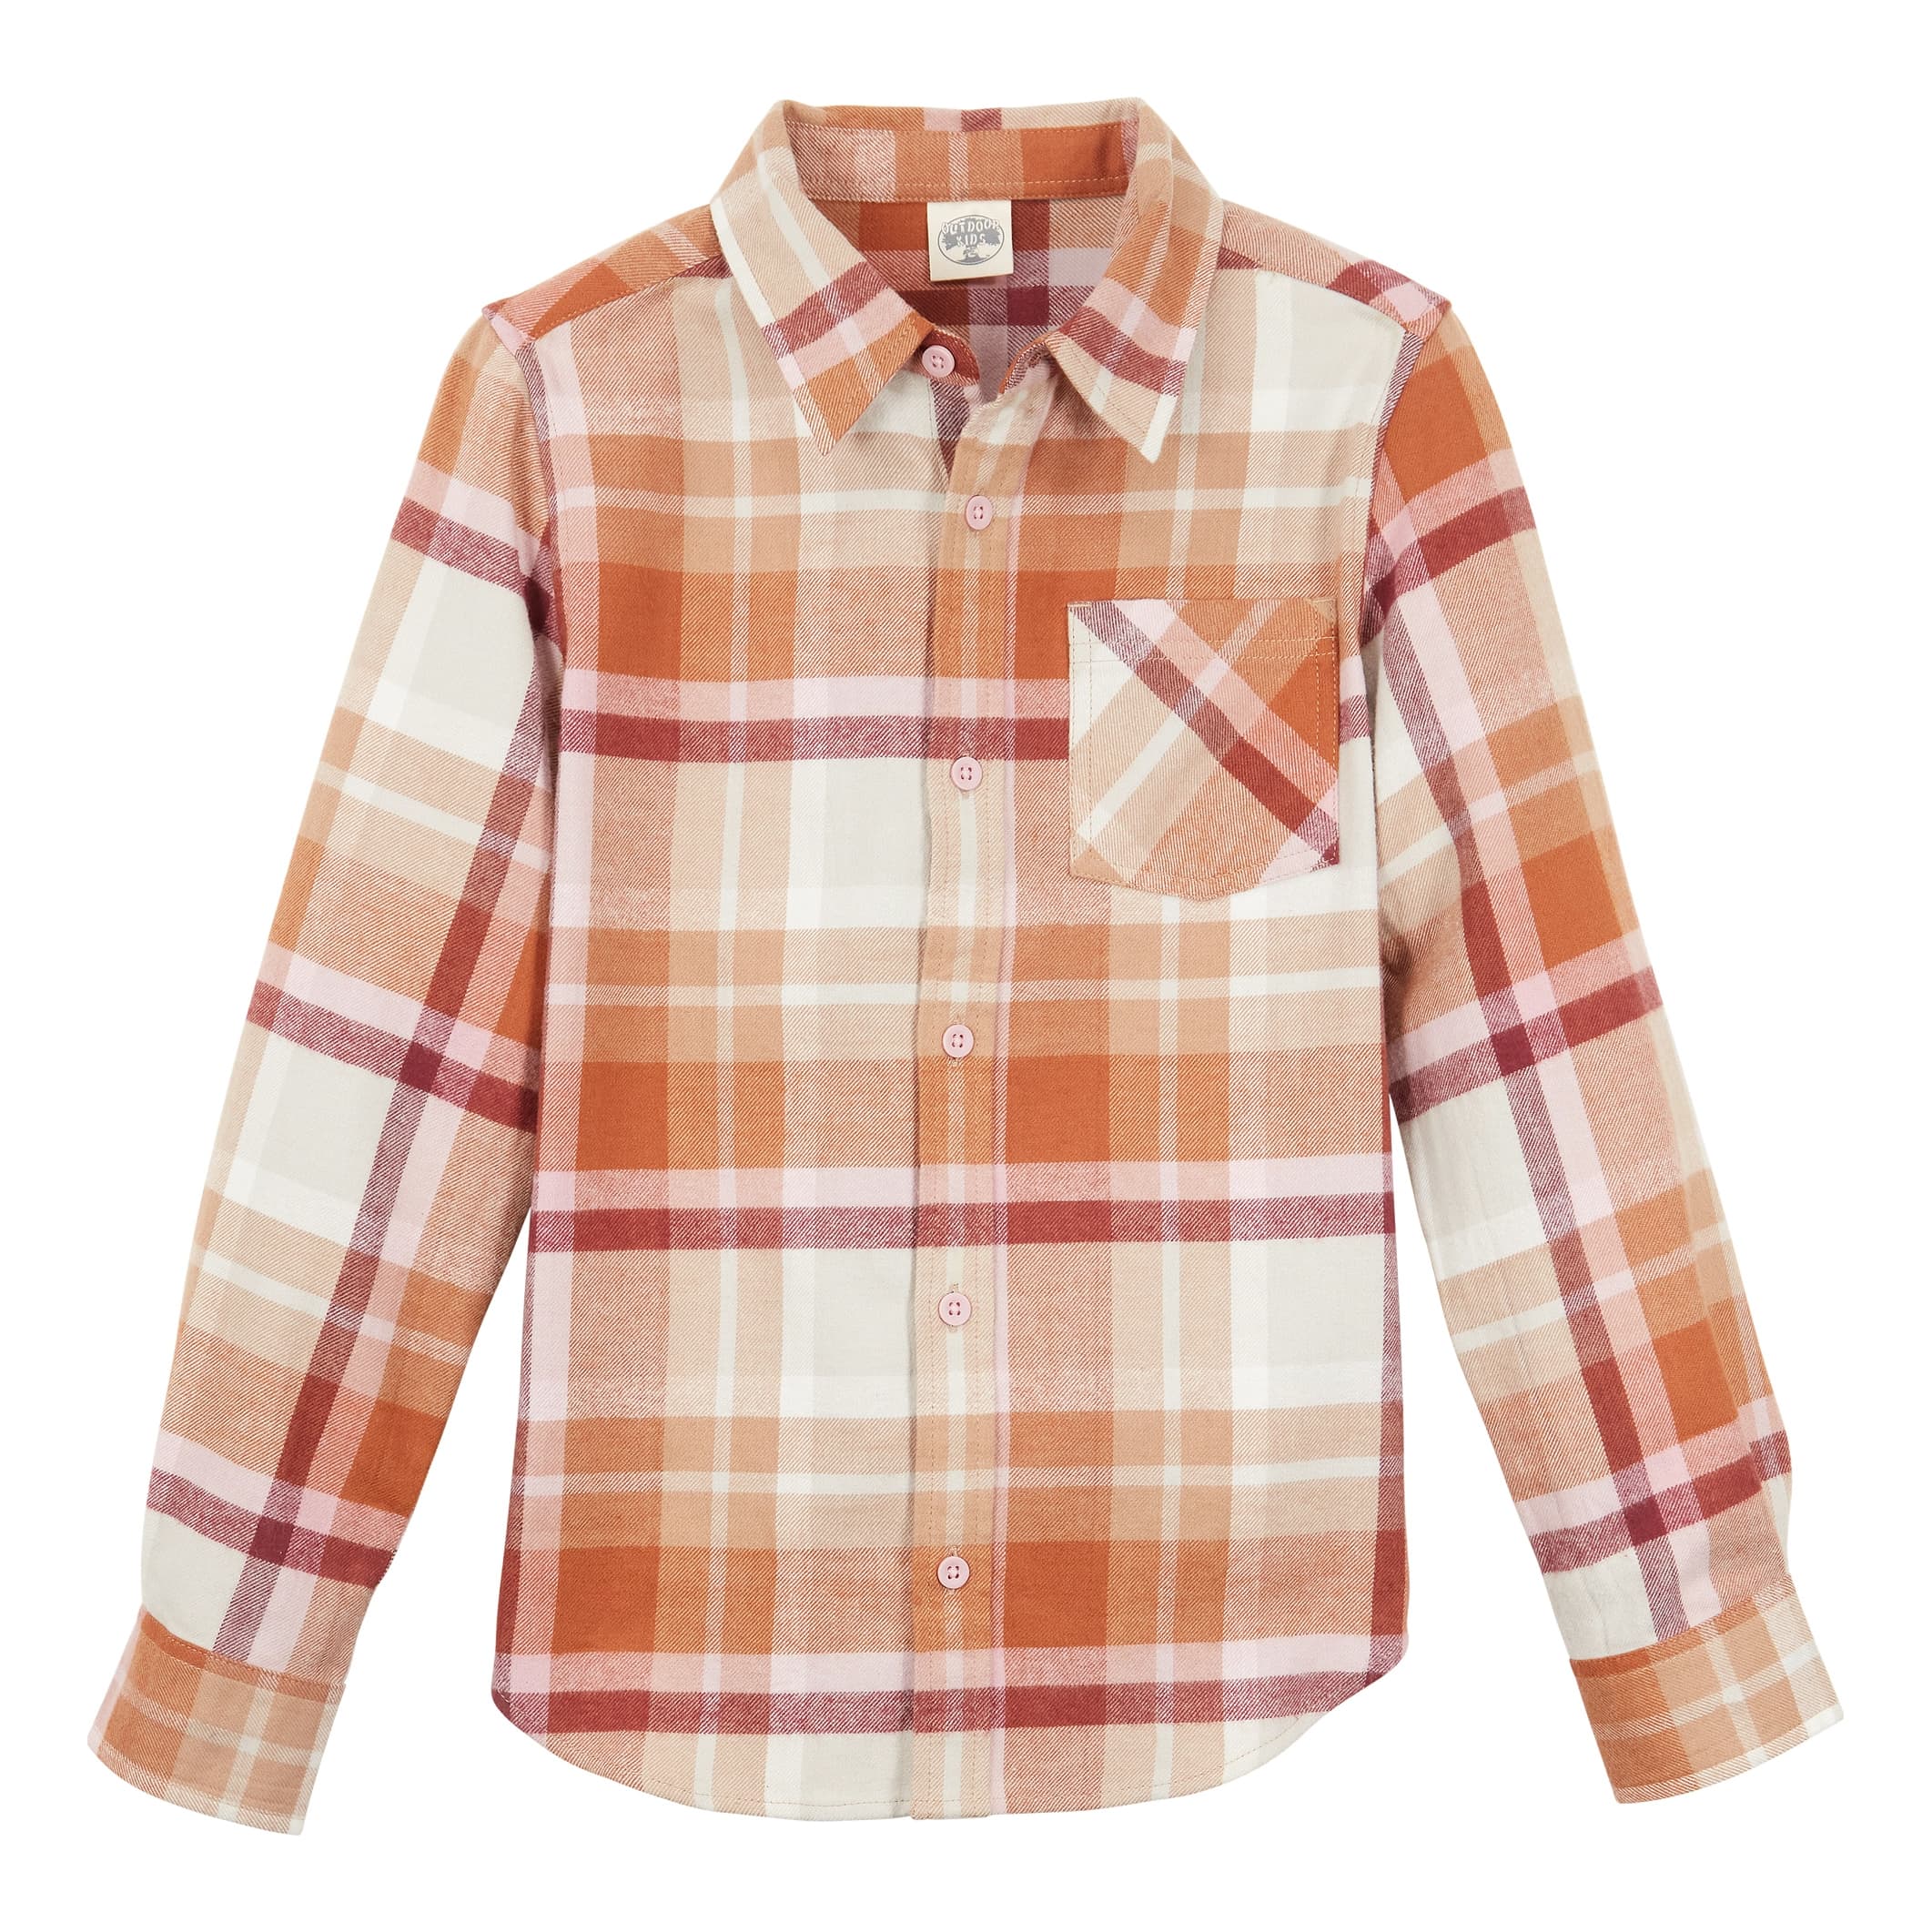 Bass Pro Shops® Boys’ Long-Sleeve Flannel Button-Down Shirt - Cream Rust